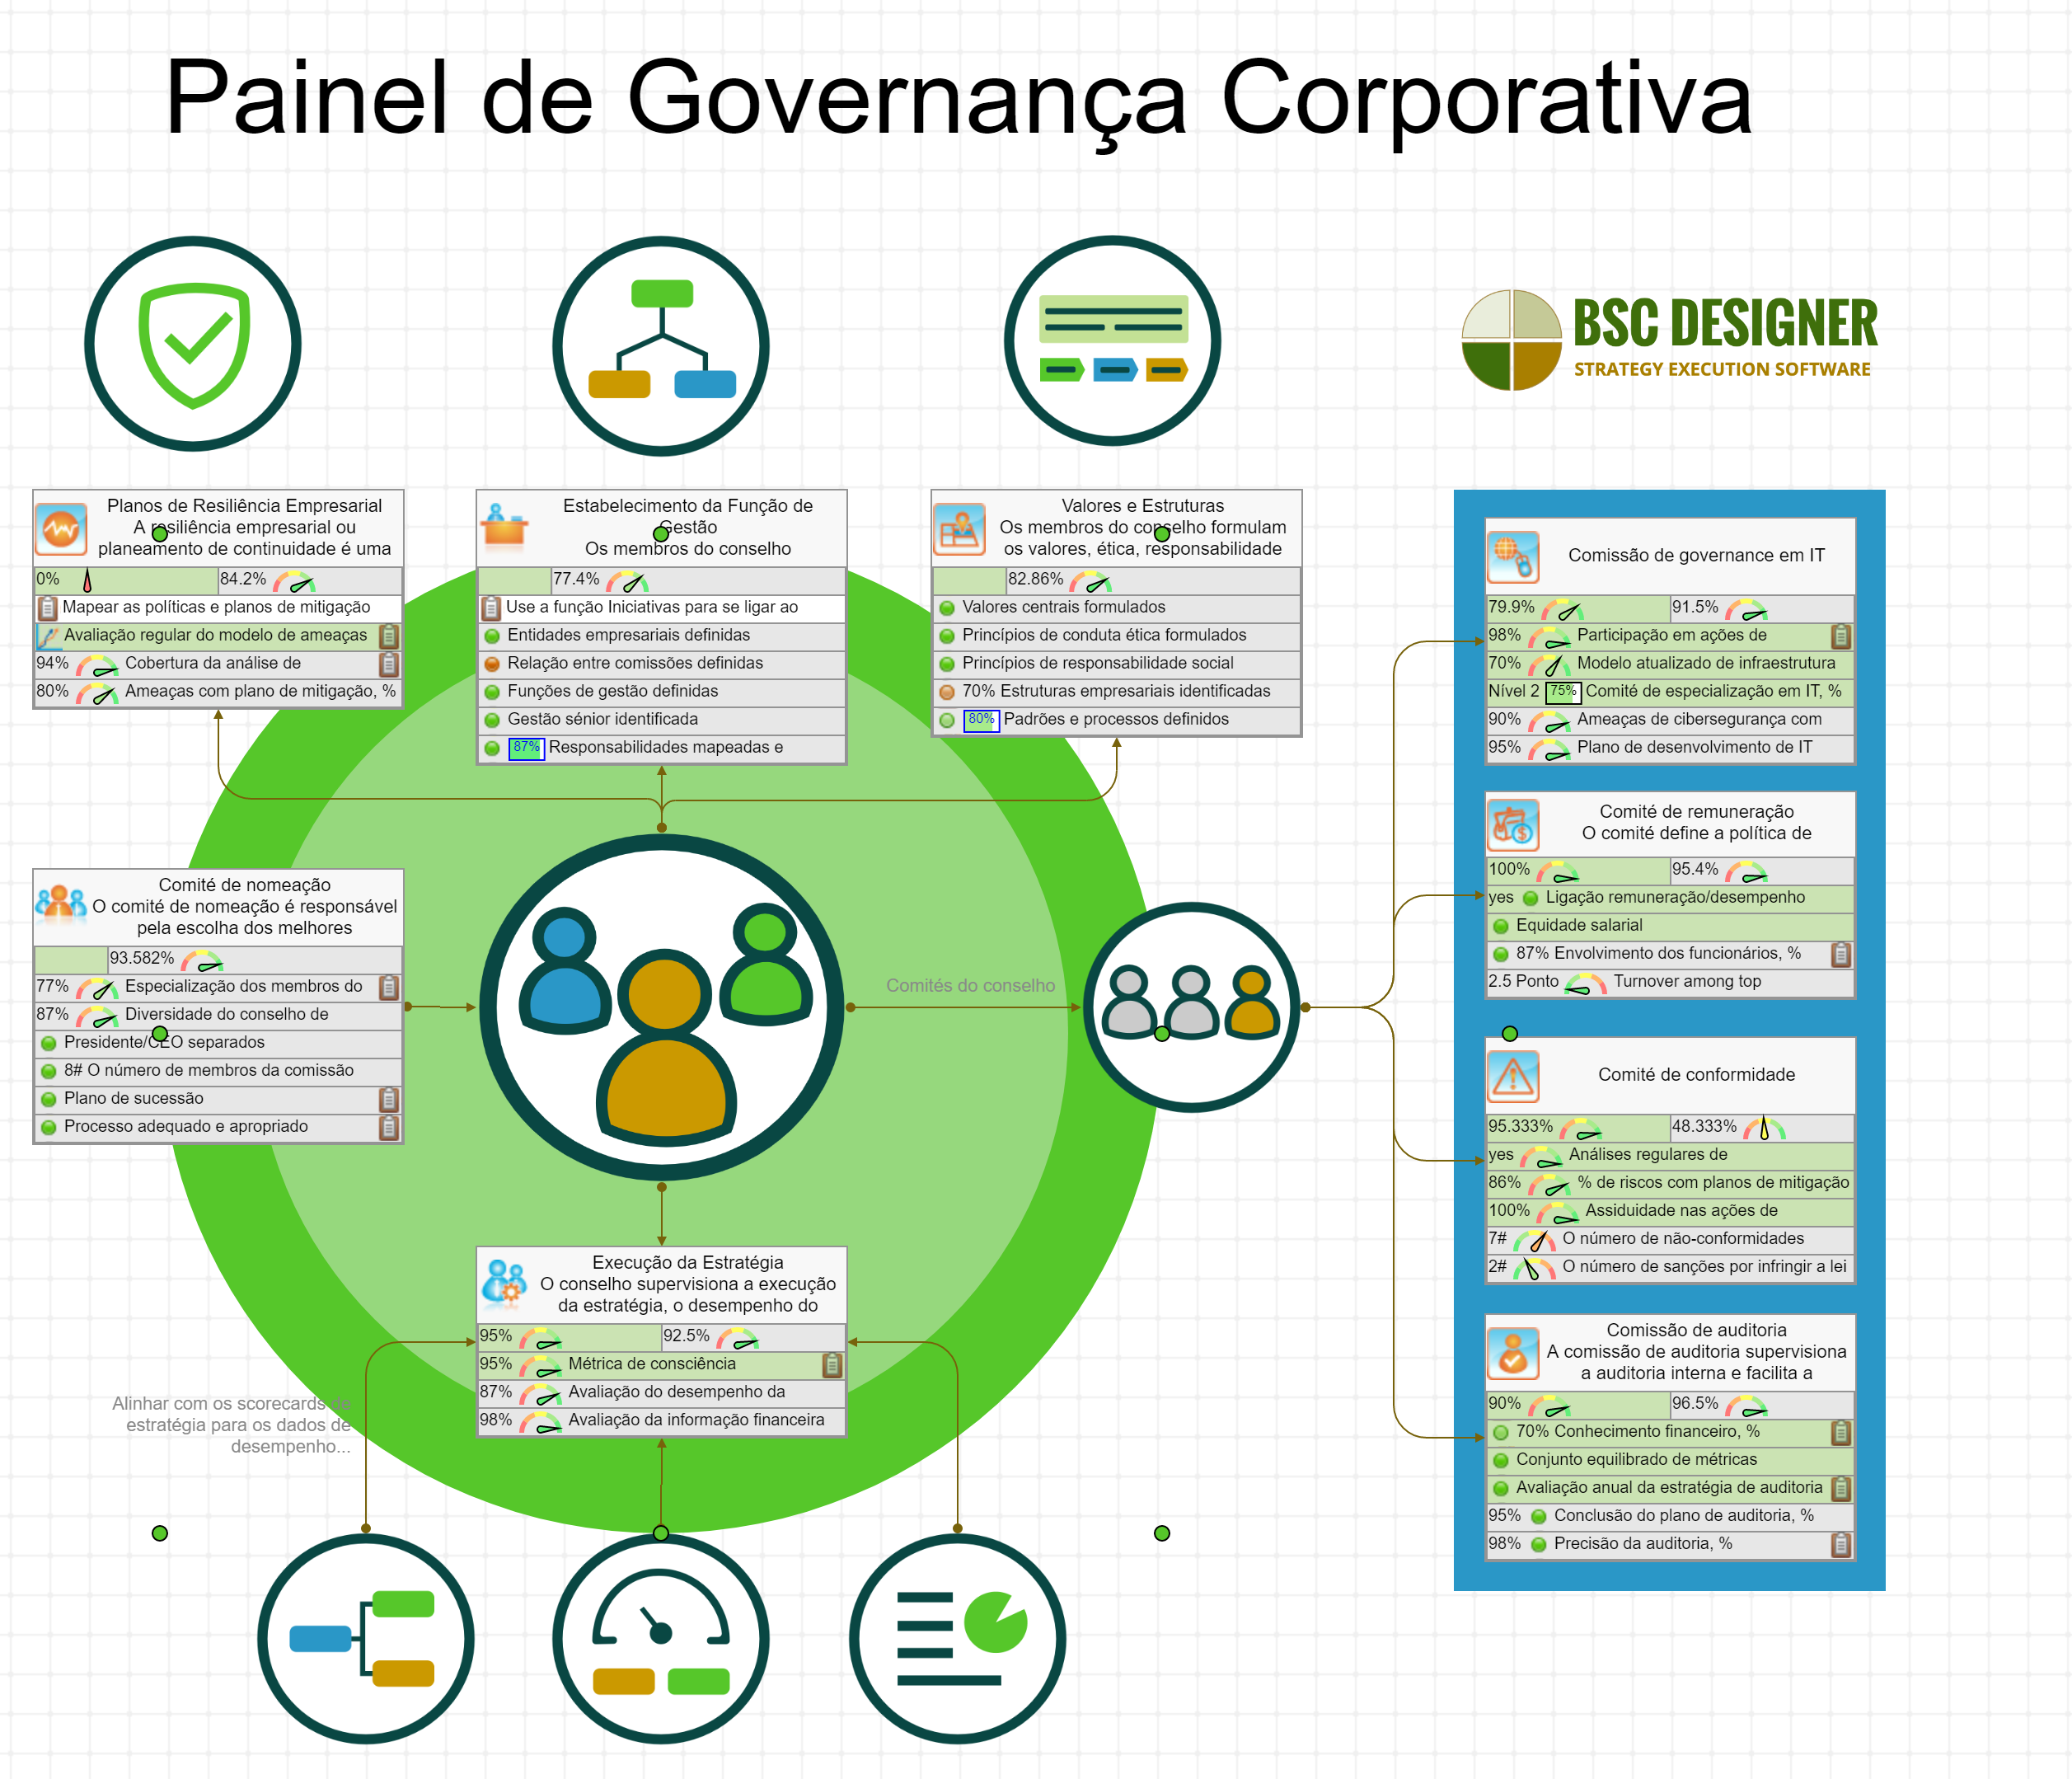 Painel de Governança Corporativa com KPIs